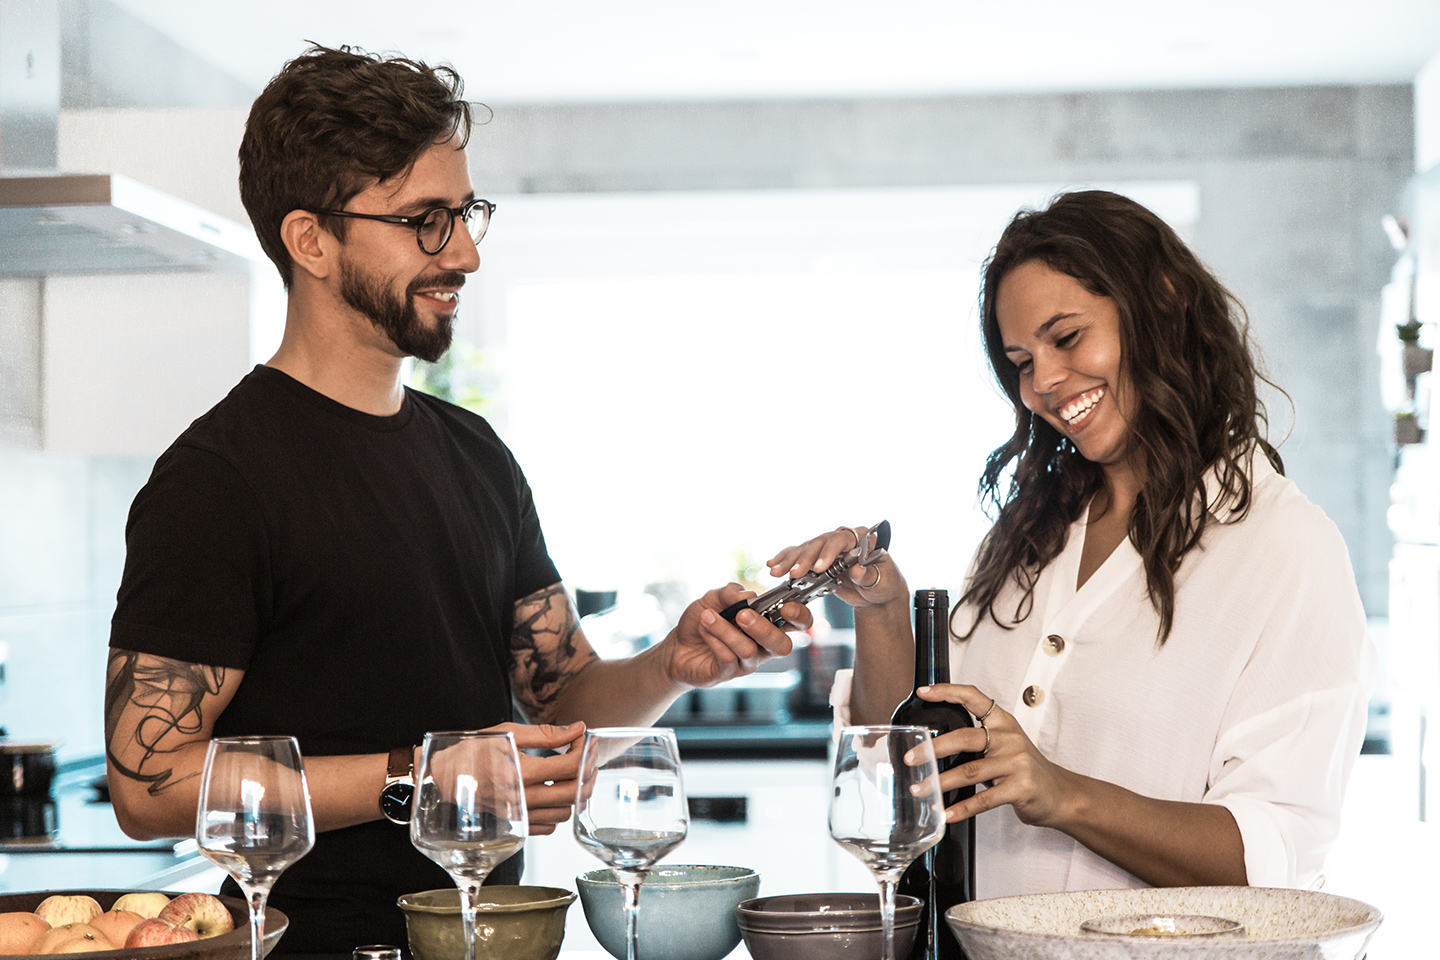 Ein Tasting für Wein findet bei diesem Paar in der eigenen Küche statt. Mann und Frau freuen sich über die Weinflasche und die Gläser vor sich in der Küche und sind voller Vorfreude auf diese Geschenkidee.